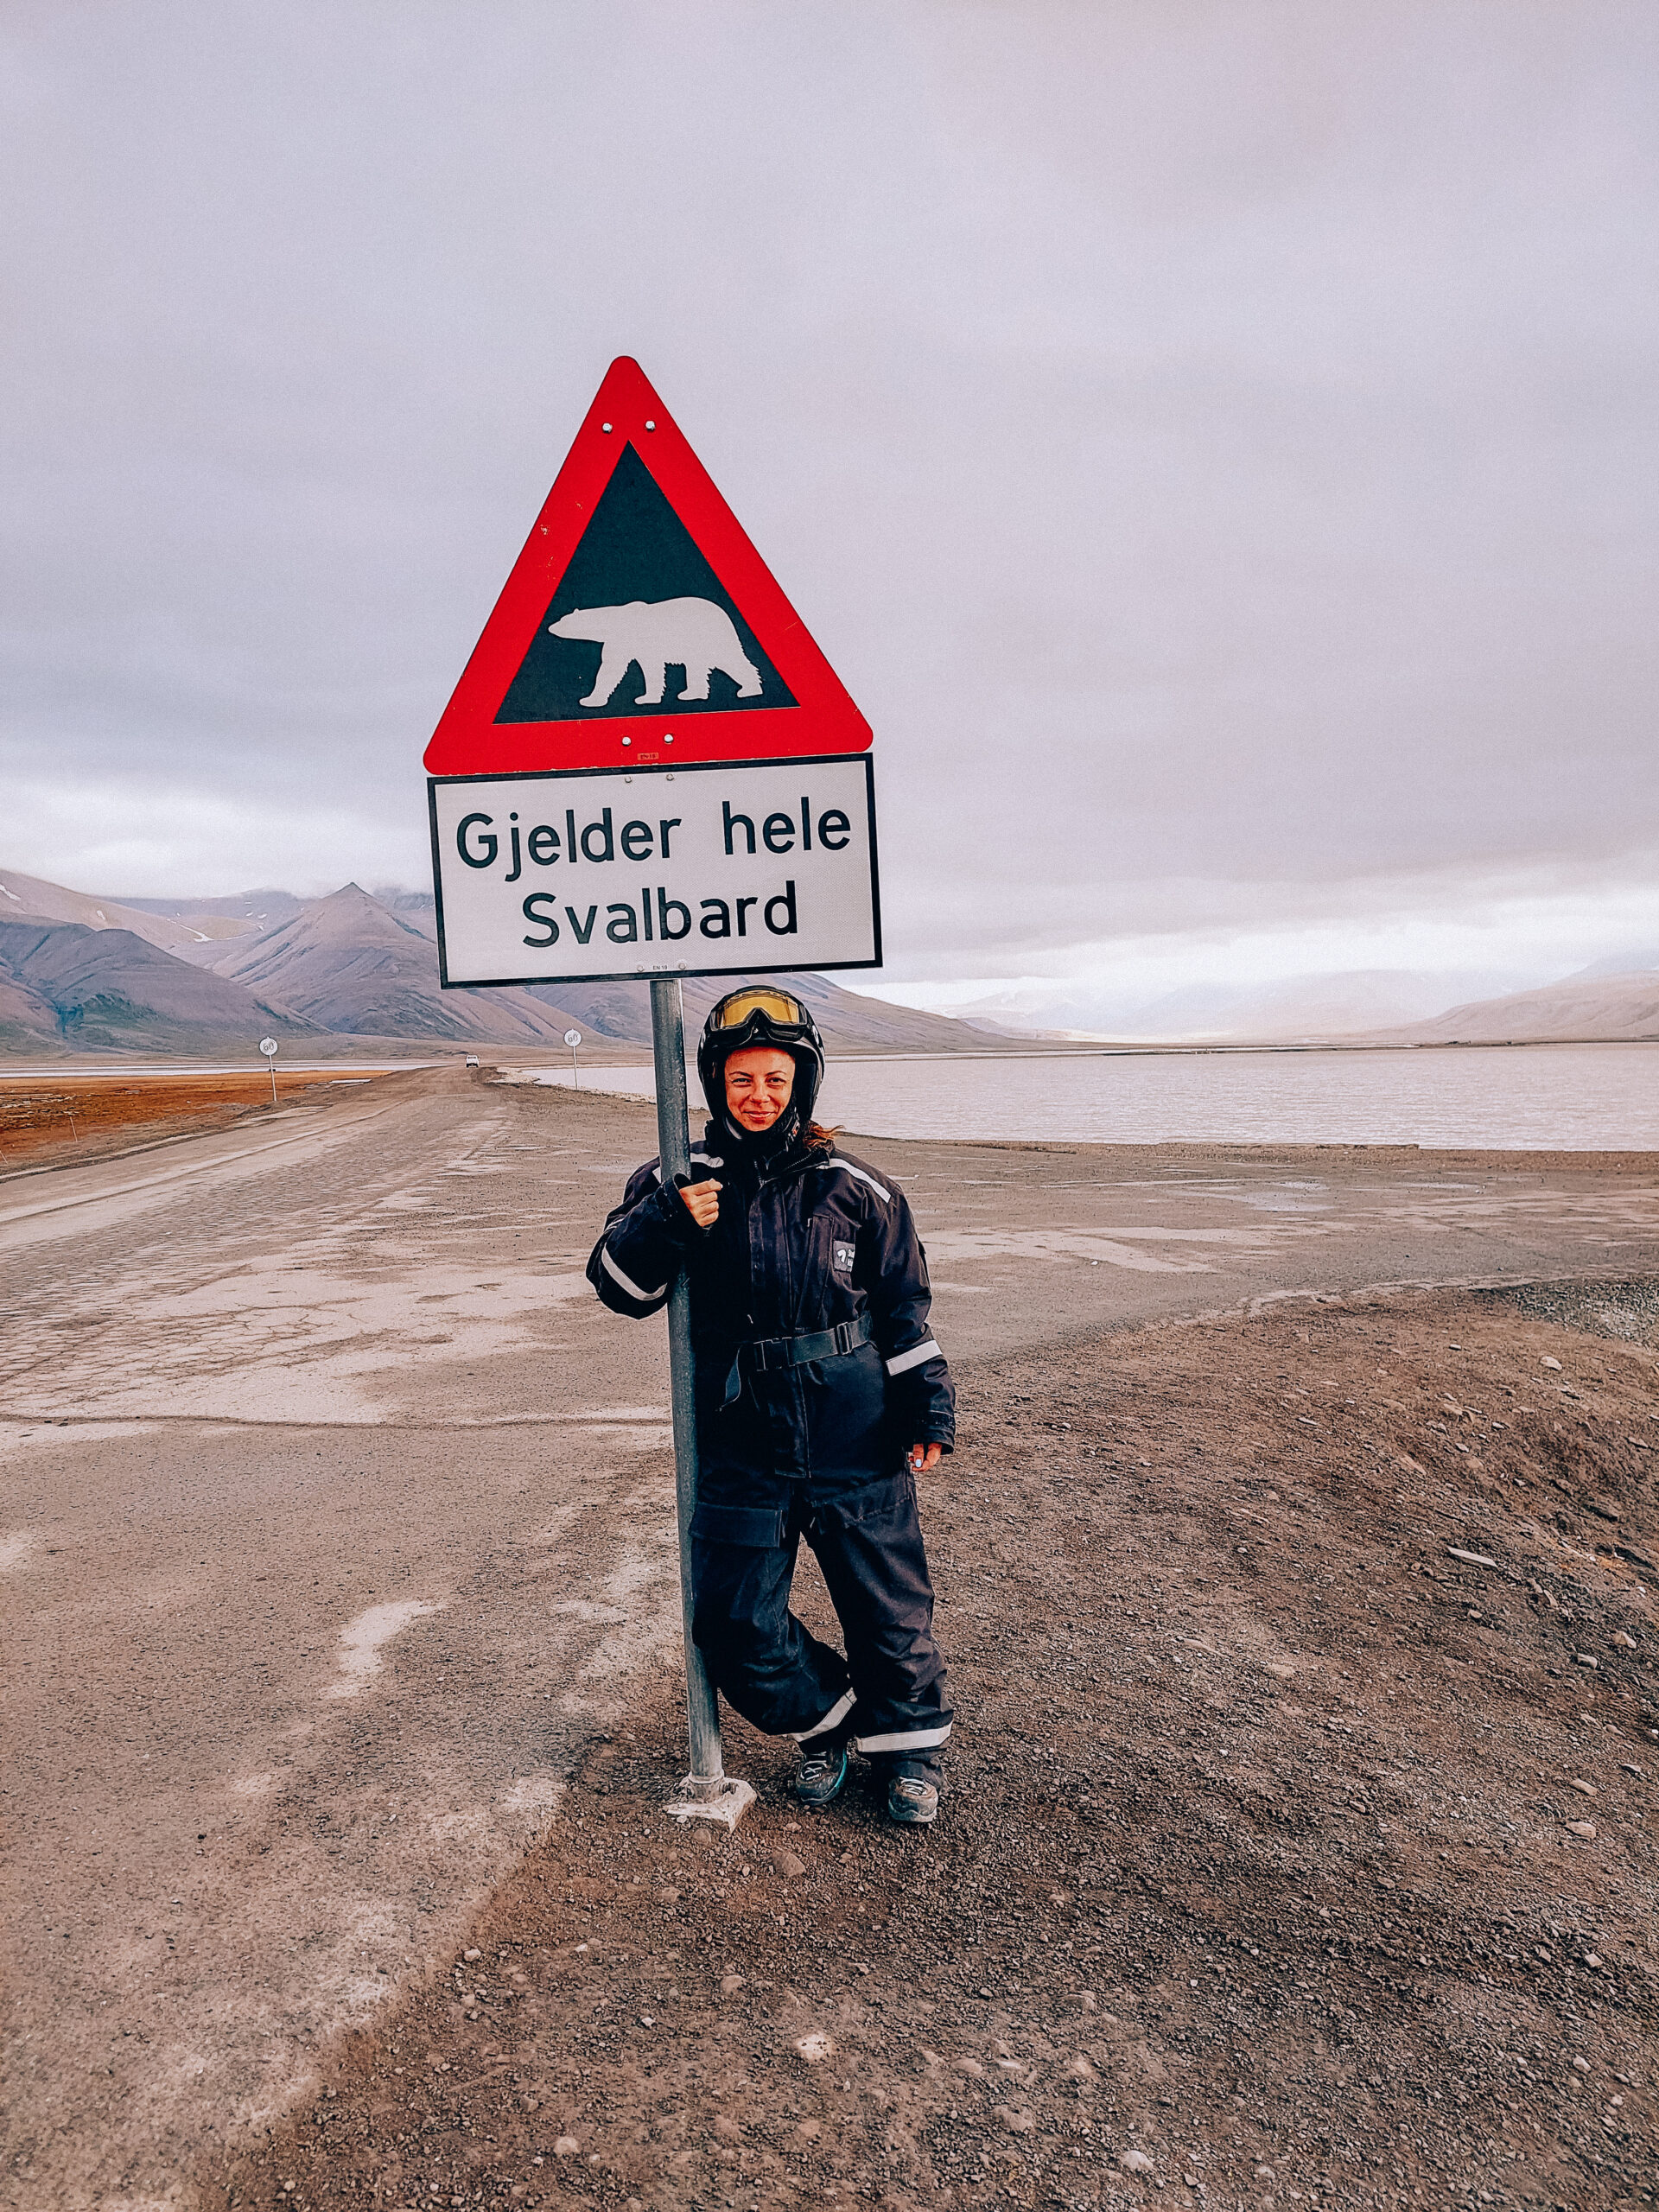 Davanti al cartello che avvisa della presenza di orsi polari in tutta l'area delle Svalbard.